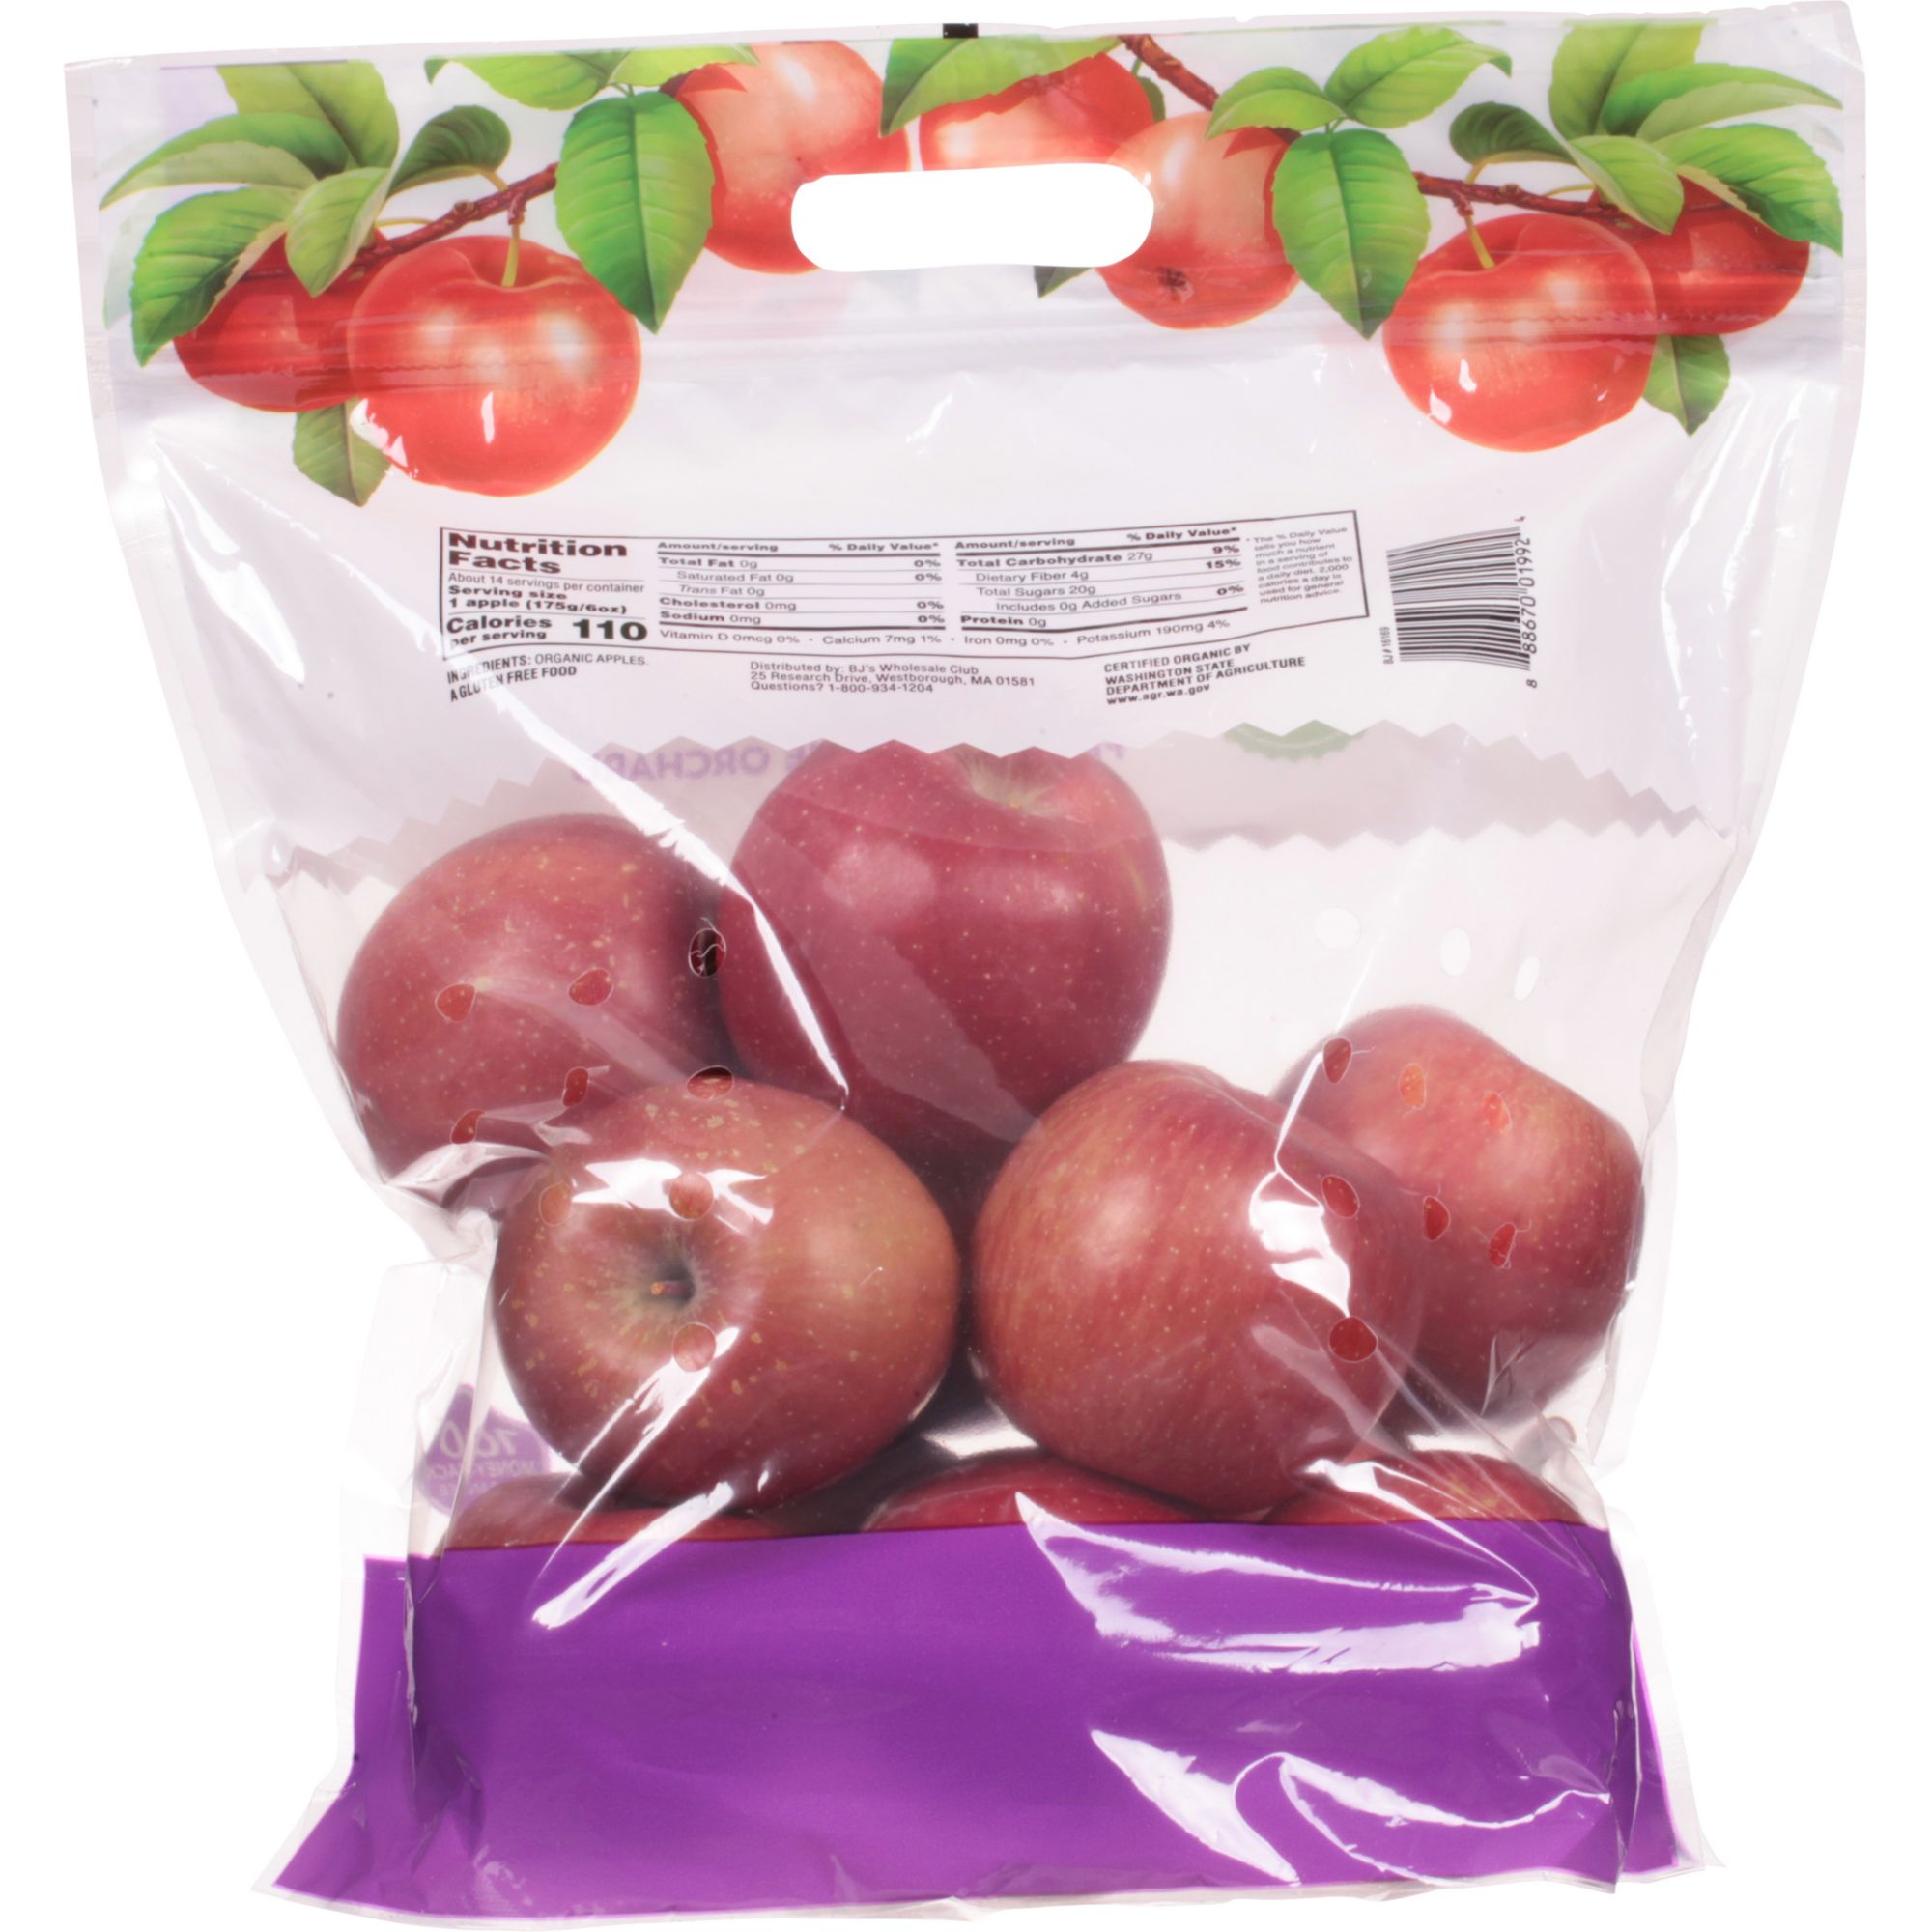 Organic Fuji Apples, 1 lb – Halalcart